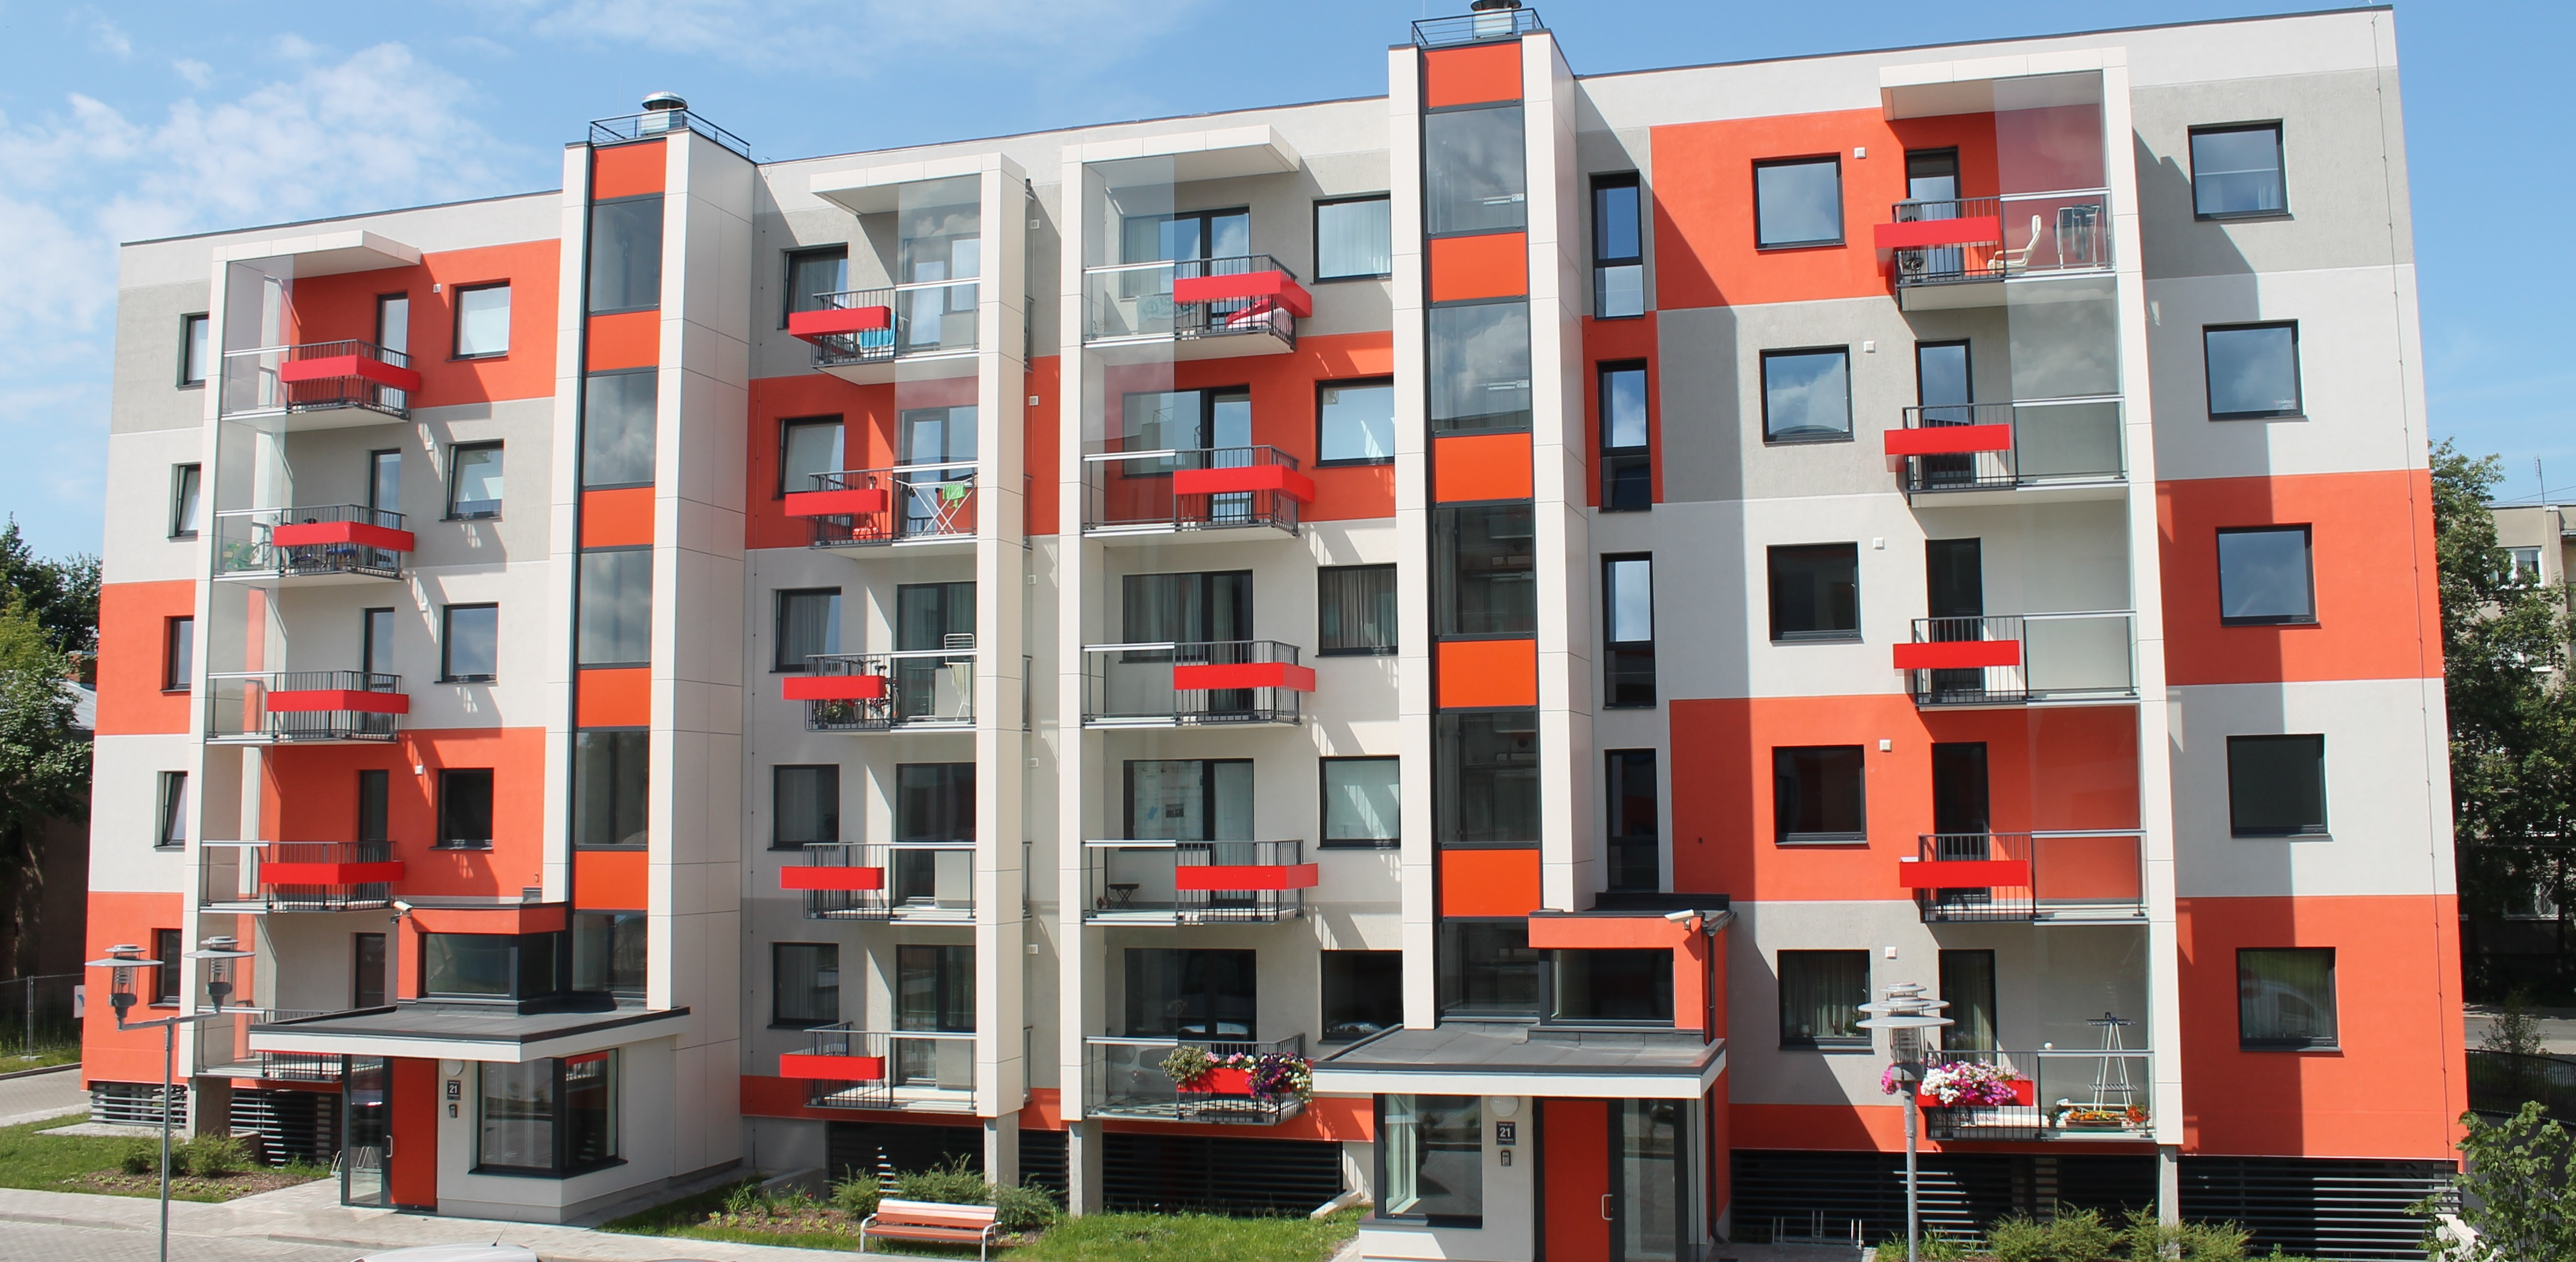 Украинцы массово покупают и арендуют квартиры в Польше - цены растут